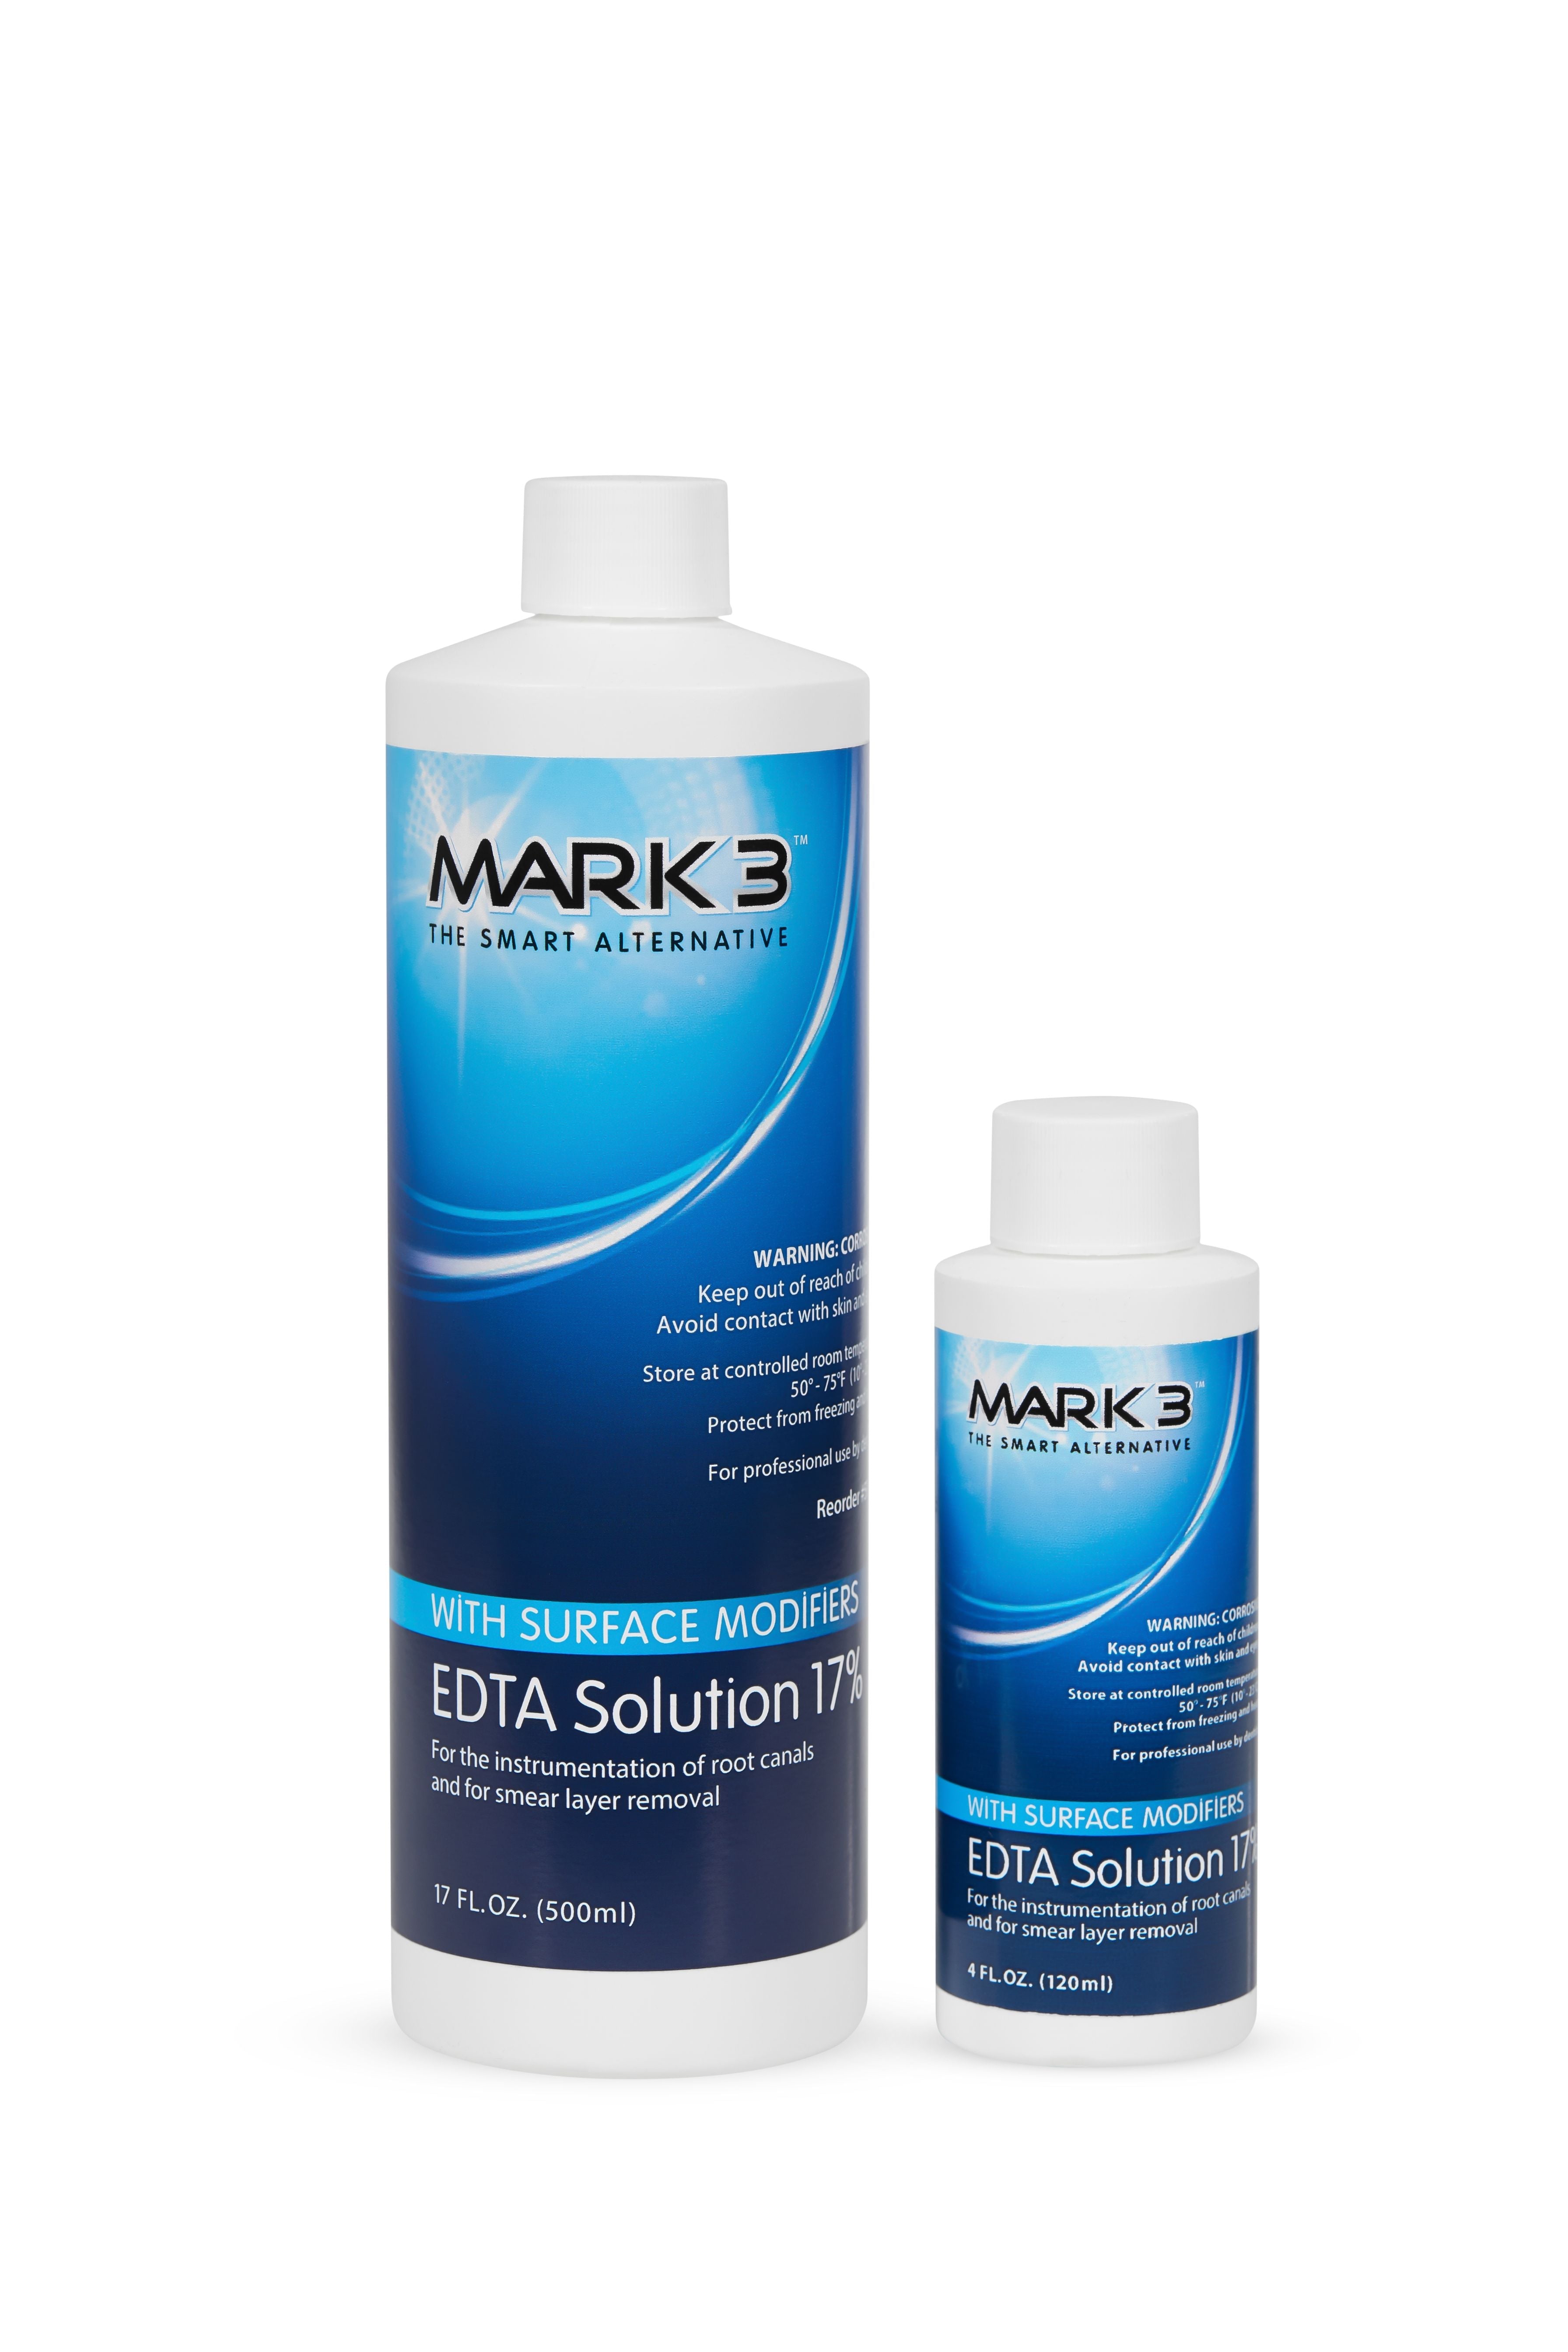 EDTA Solution 17% Bottle 17oz 500ml - MARK3